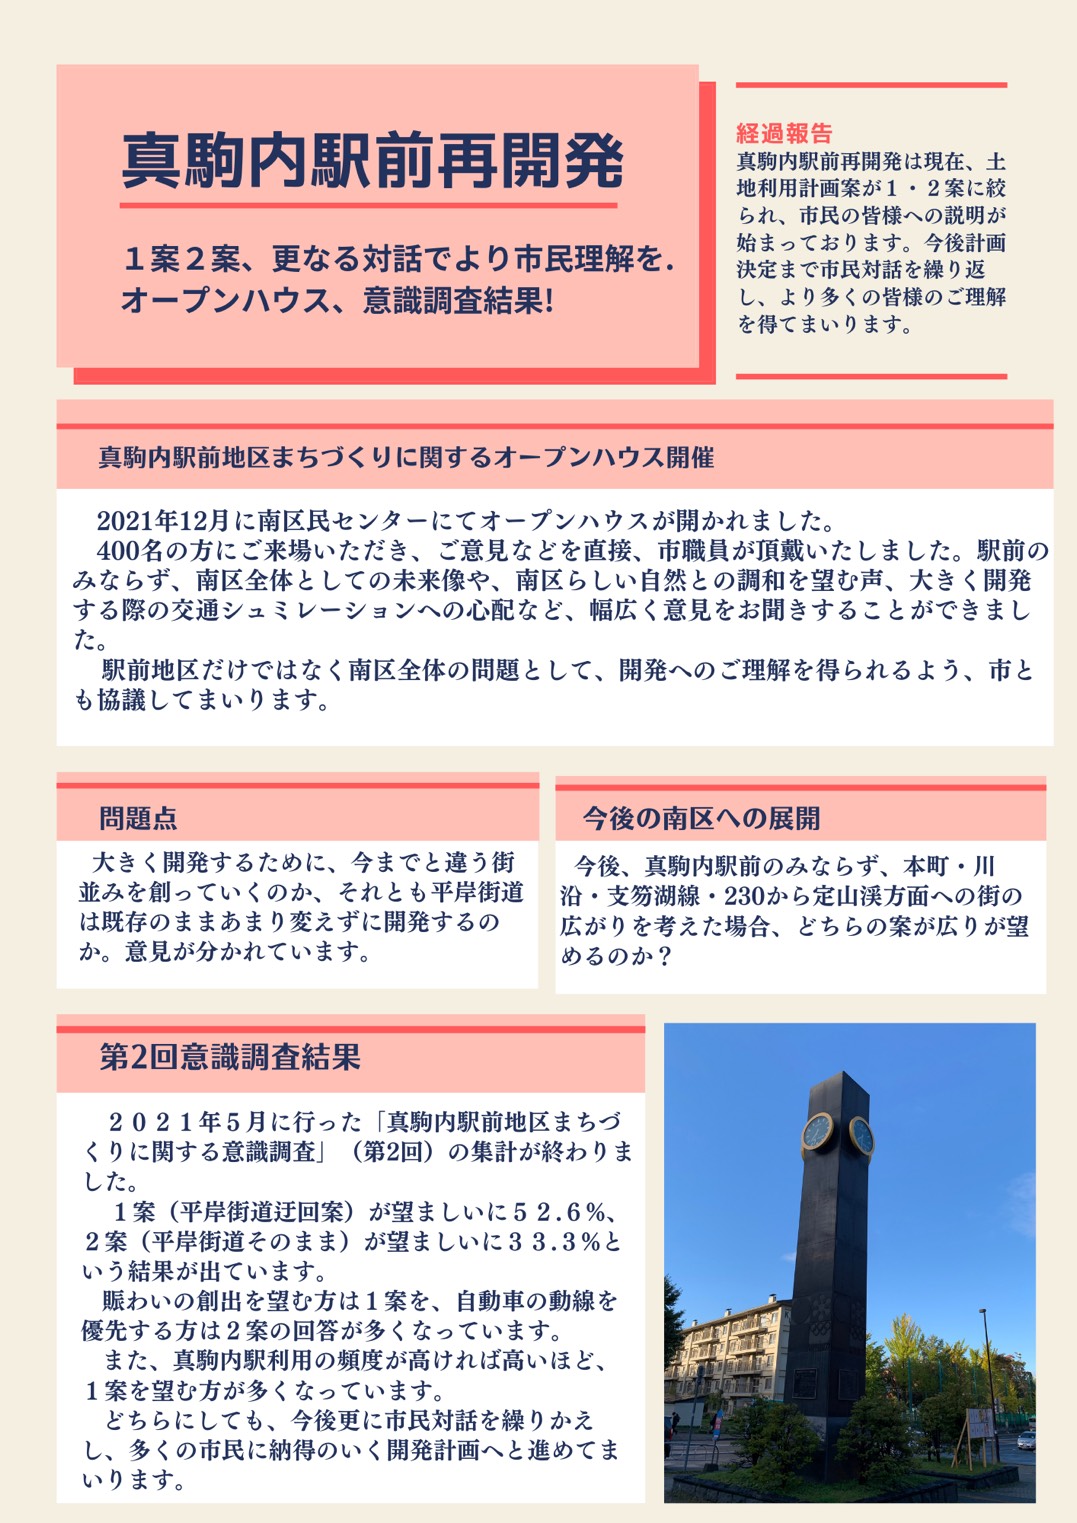 あおいひろみの市政報告No.26